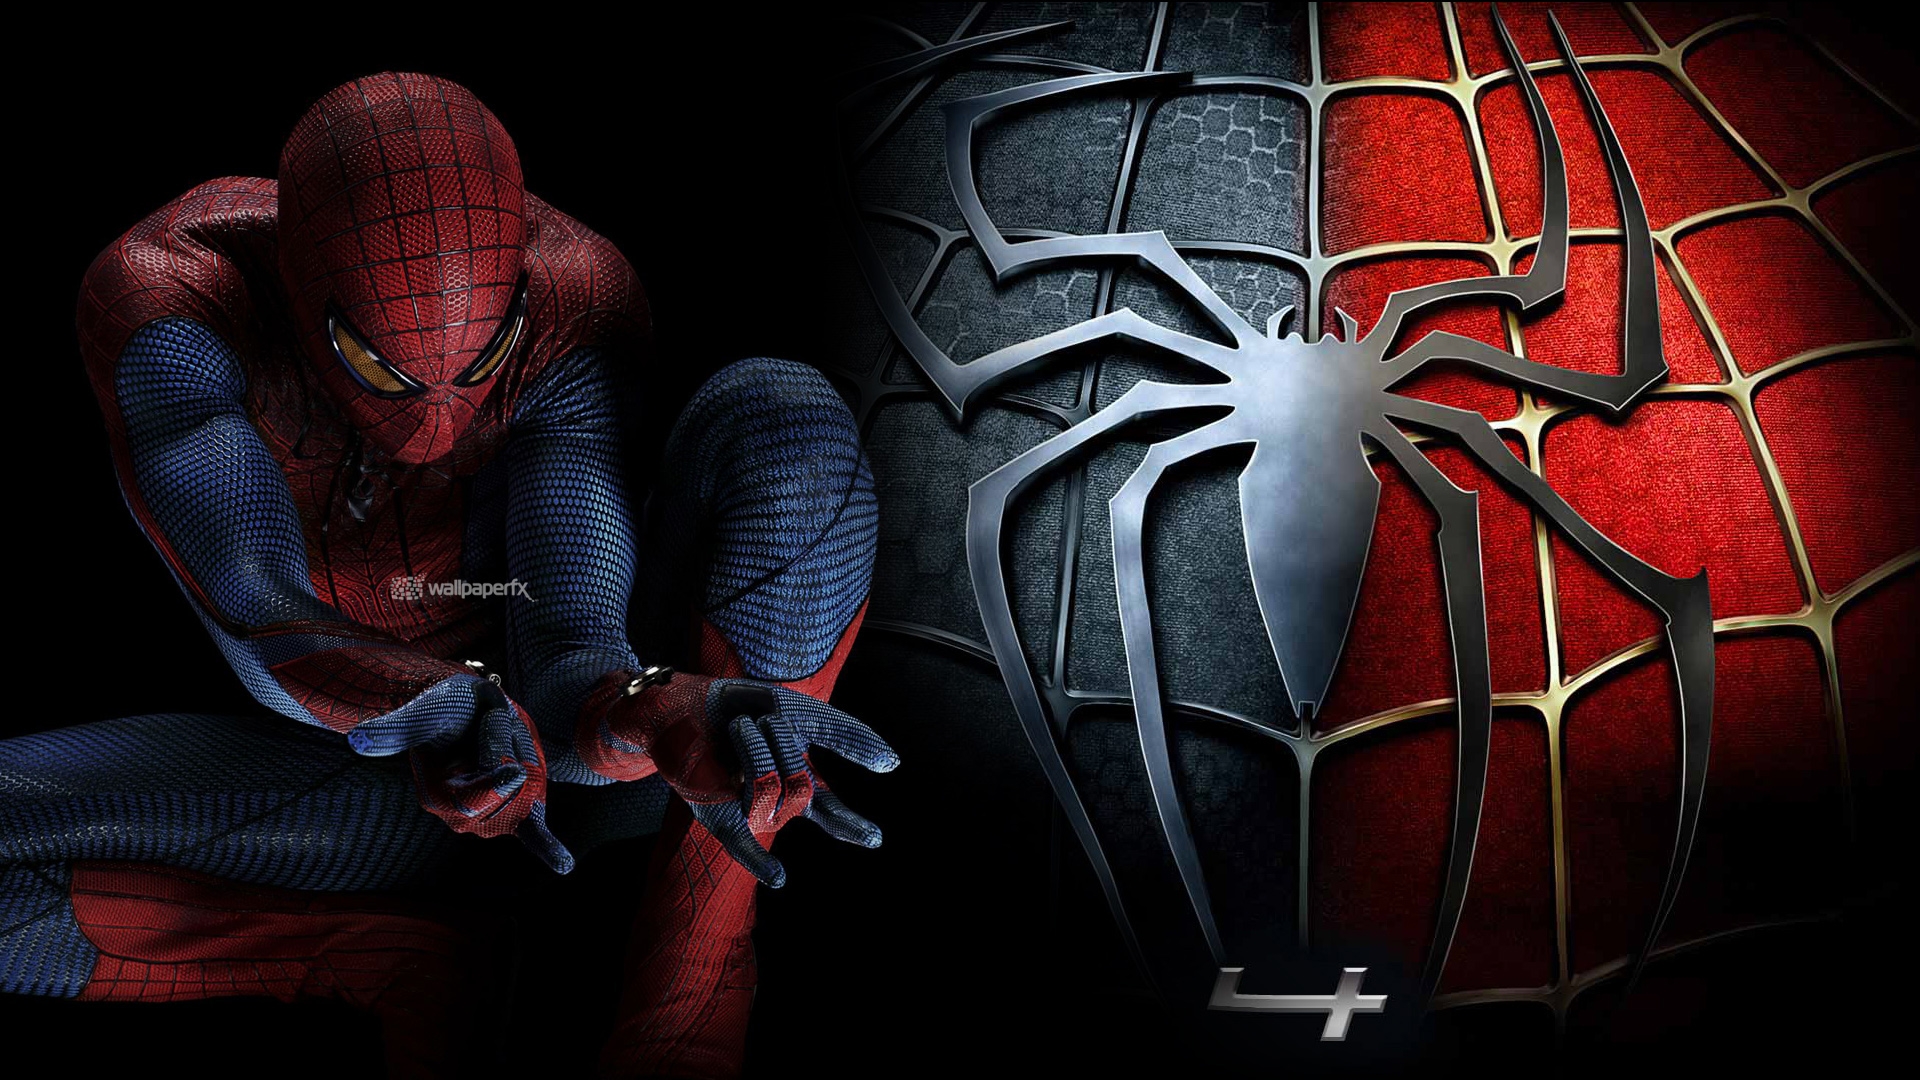 Fondos de pantalla de Spiderman Wallpapers de Spiderman Fondos de